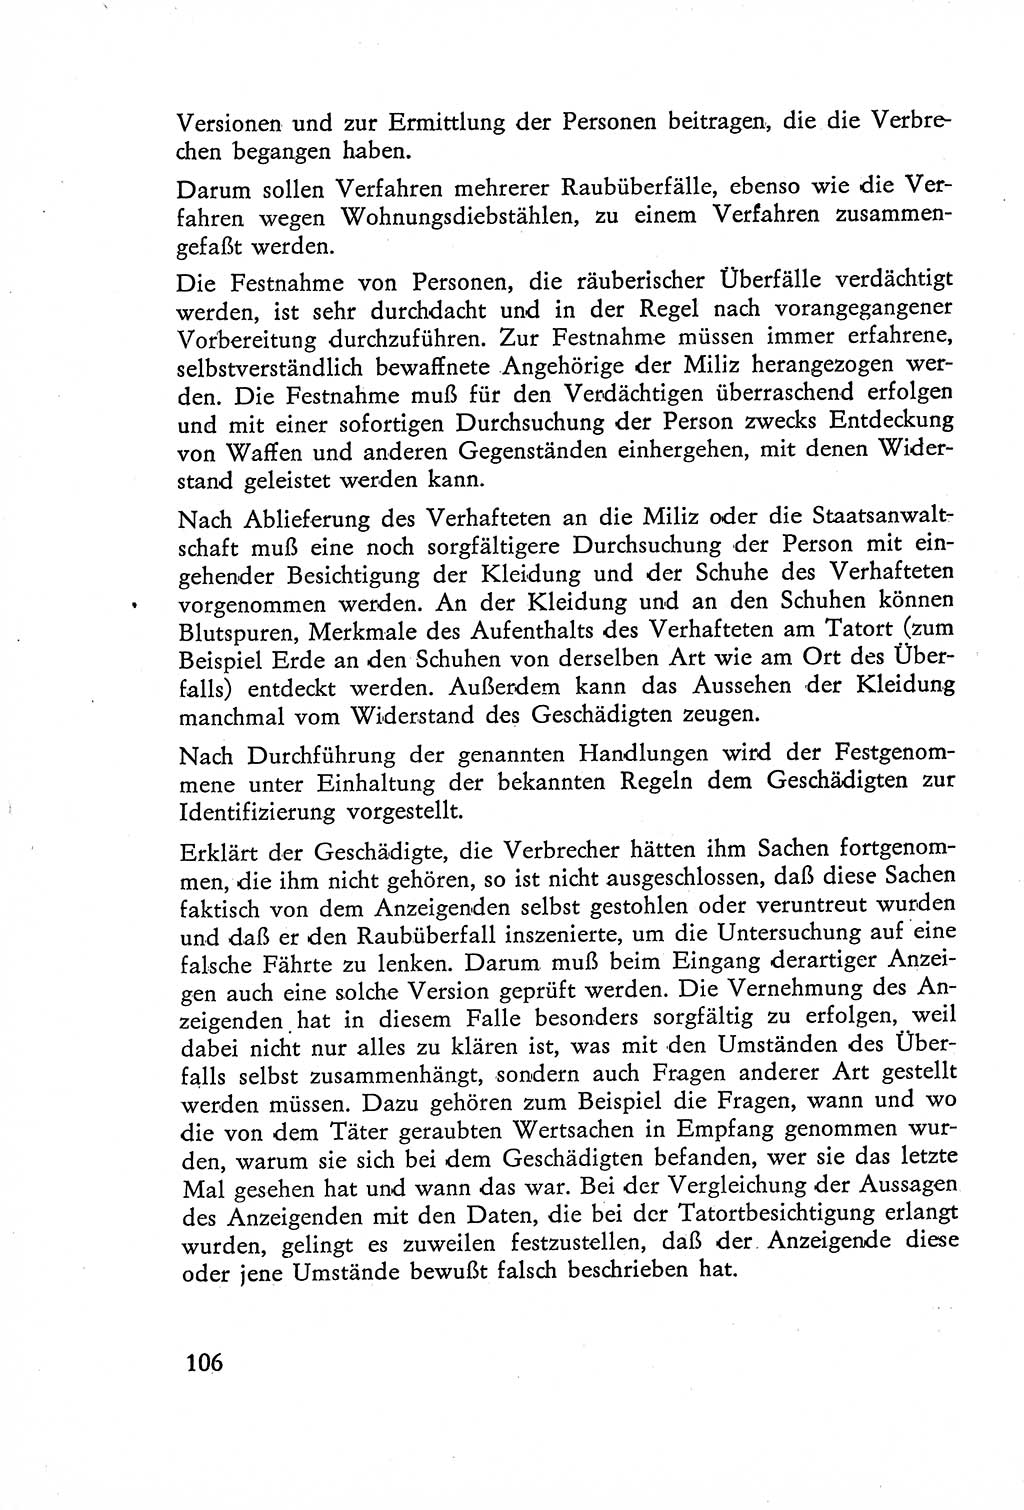 Die Untersuchung einzelner Verbrechensarten [Deutsche Demokratische Republik (DDR)] 1960, Seite 106 (Unters. Verbr.-Art. DDR 1960, S. 106)